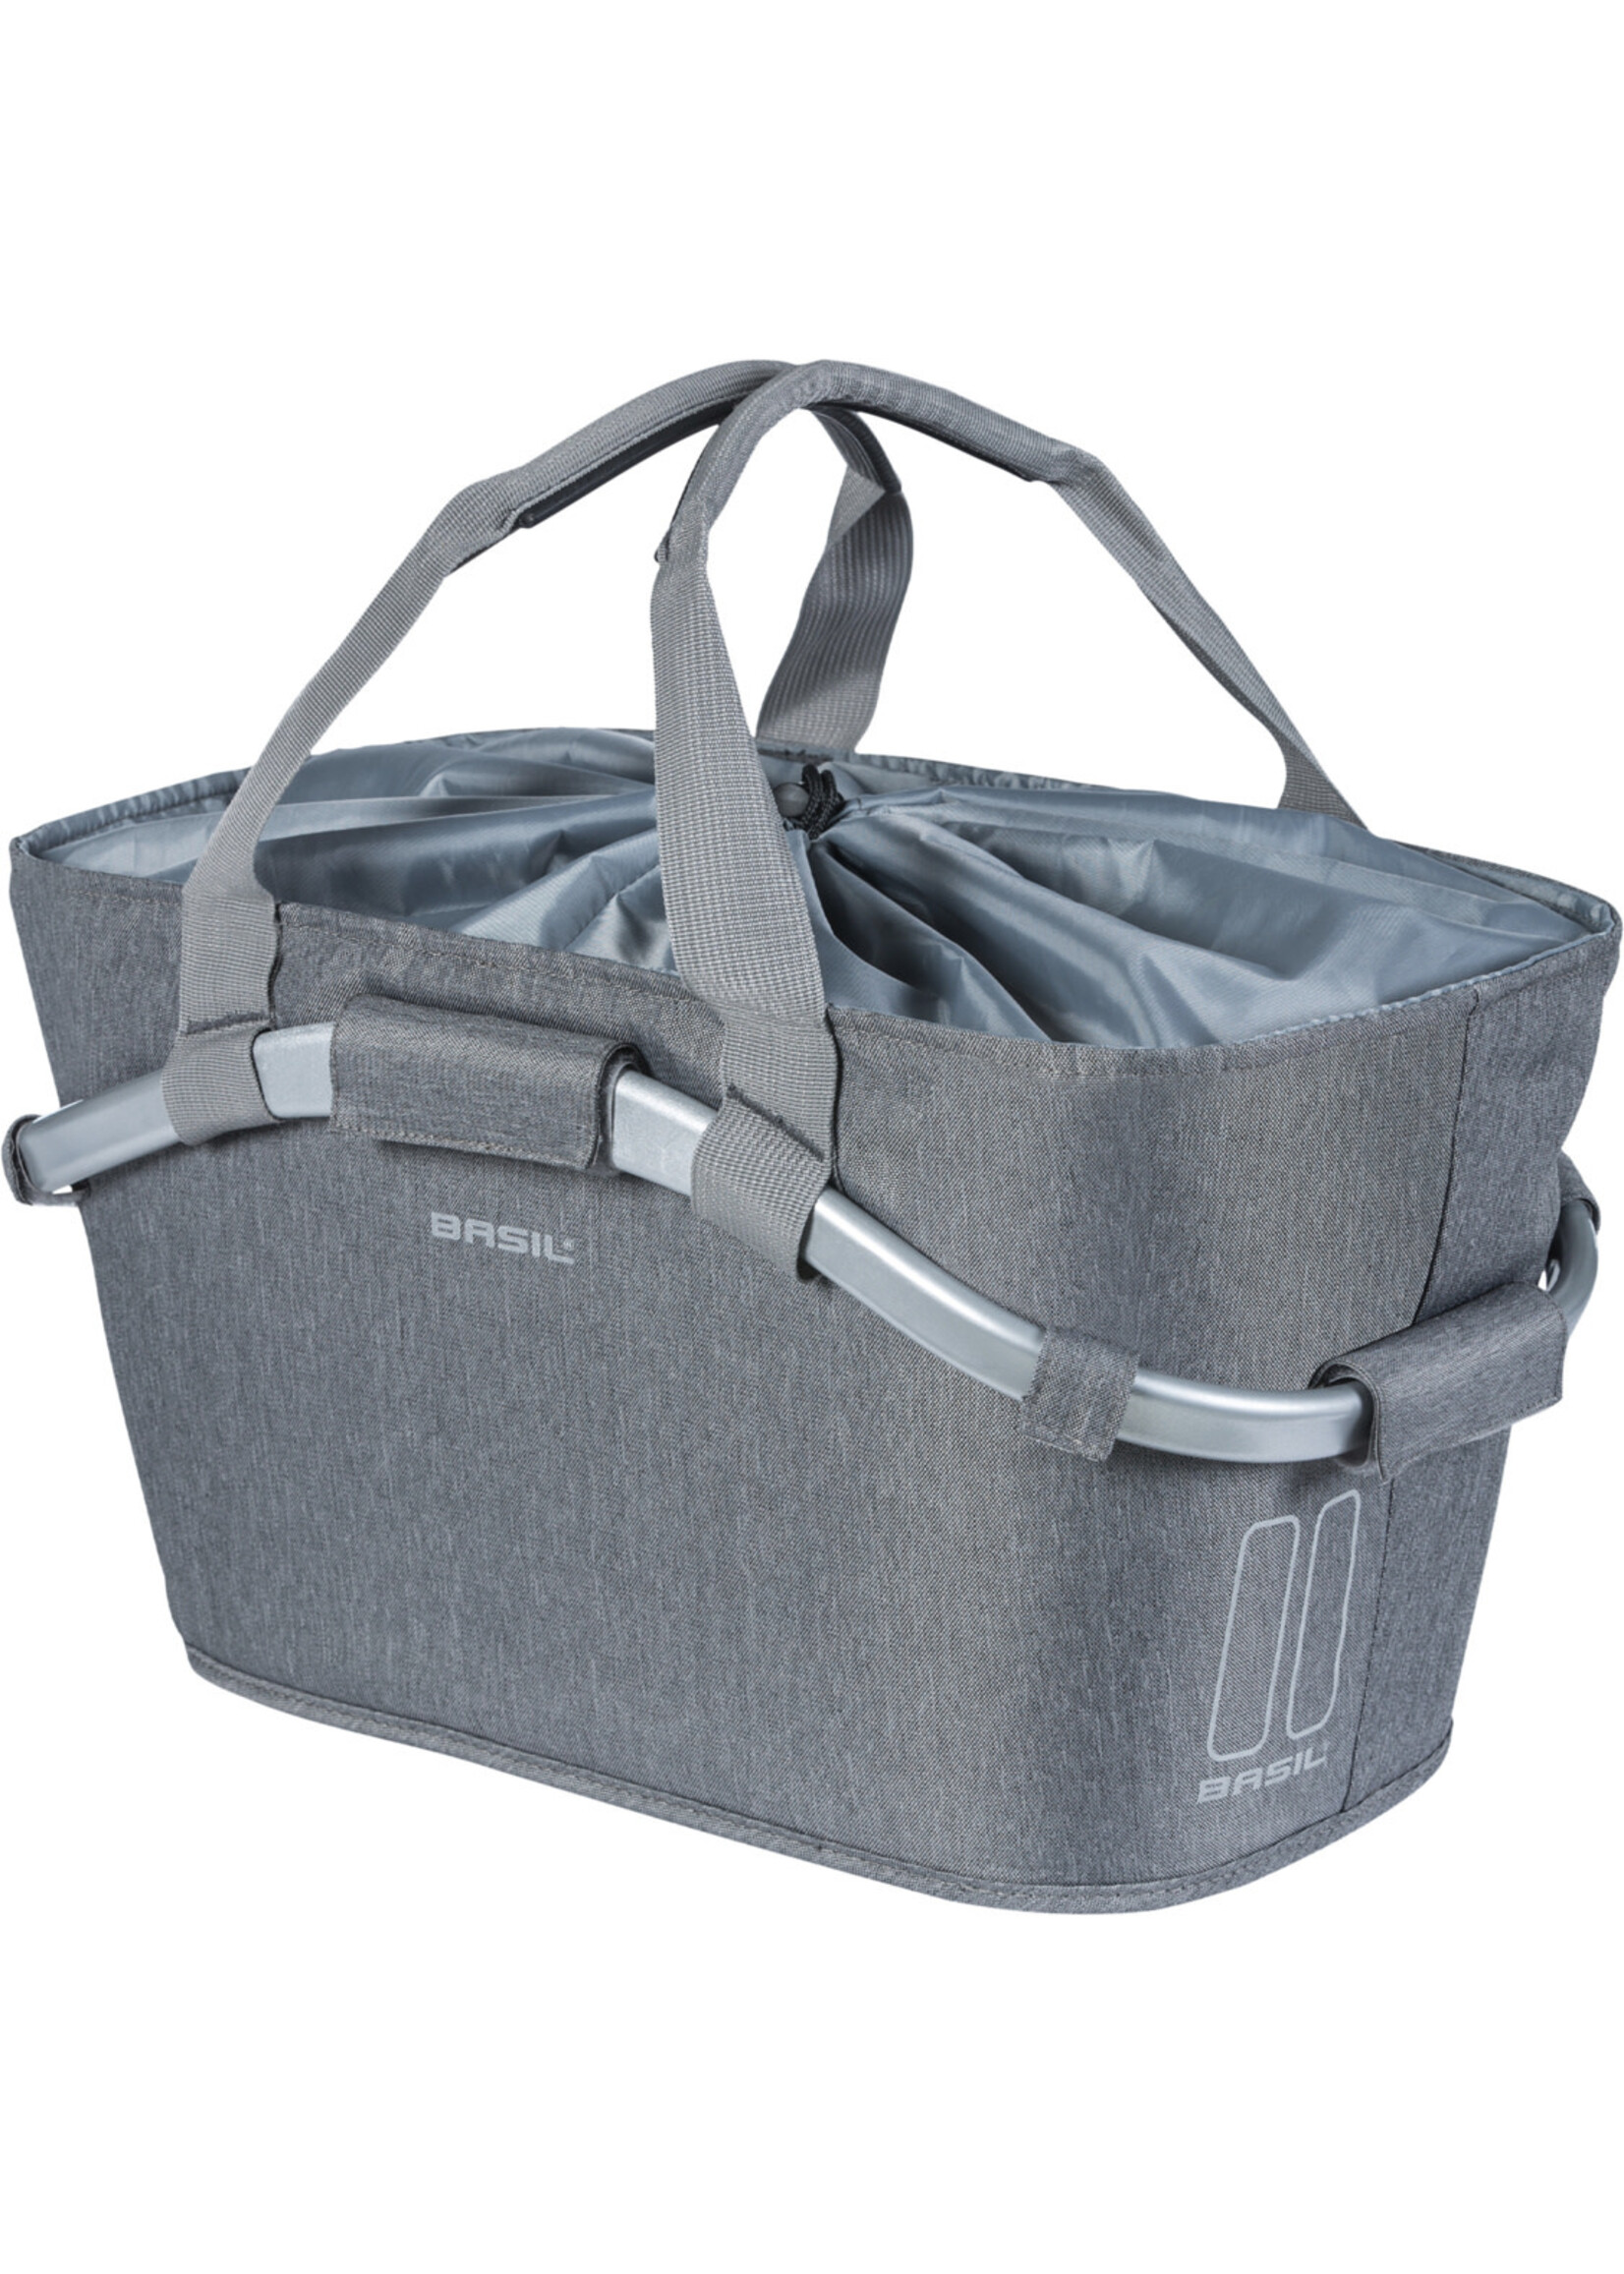 BASIL Panier porte-bagages 2Day Classic MIK 22l, gris